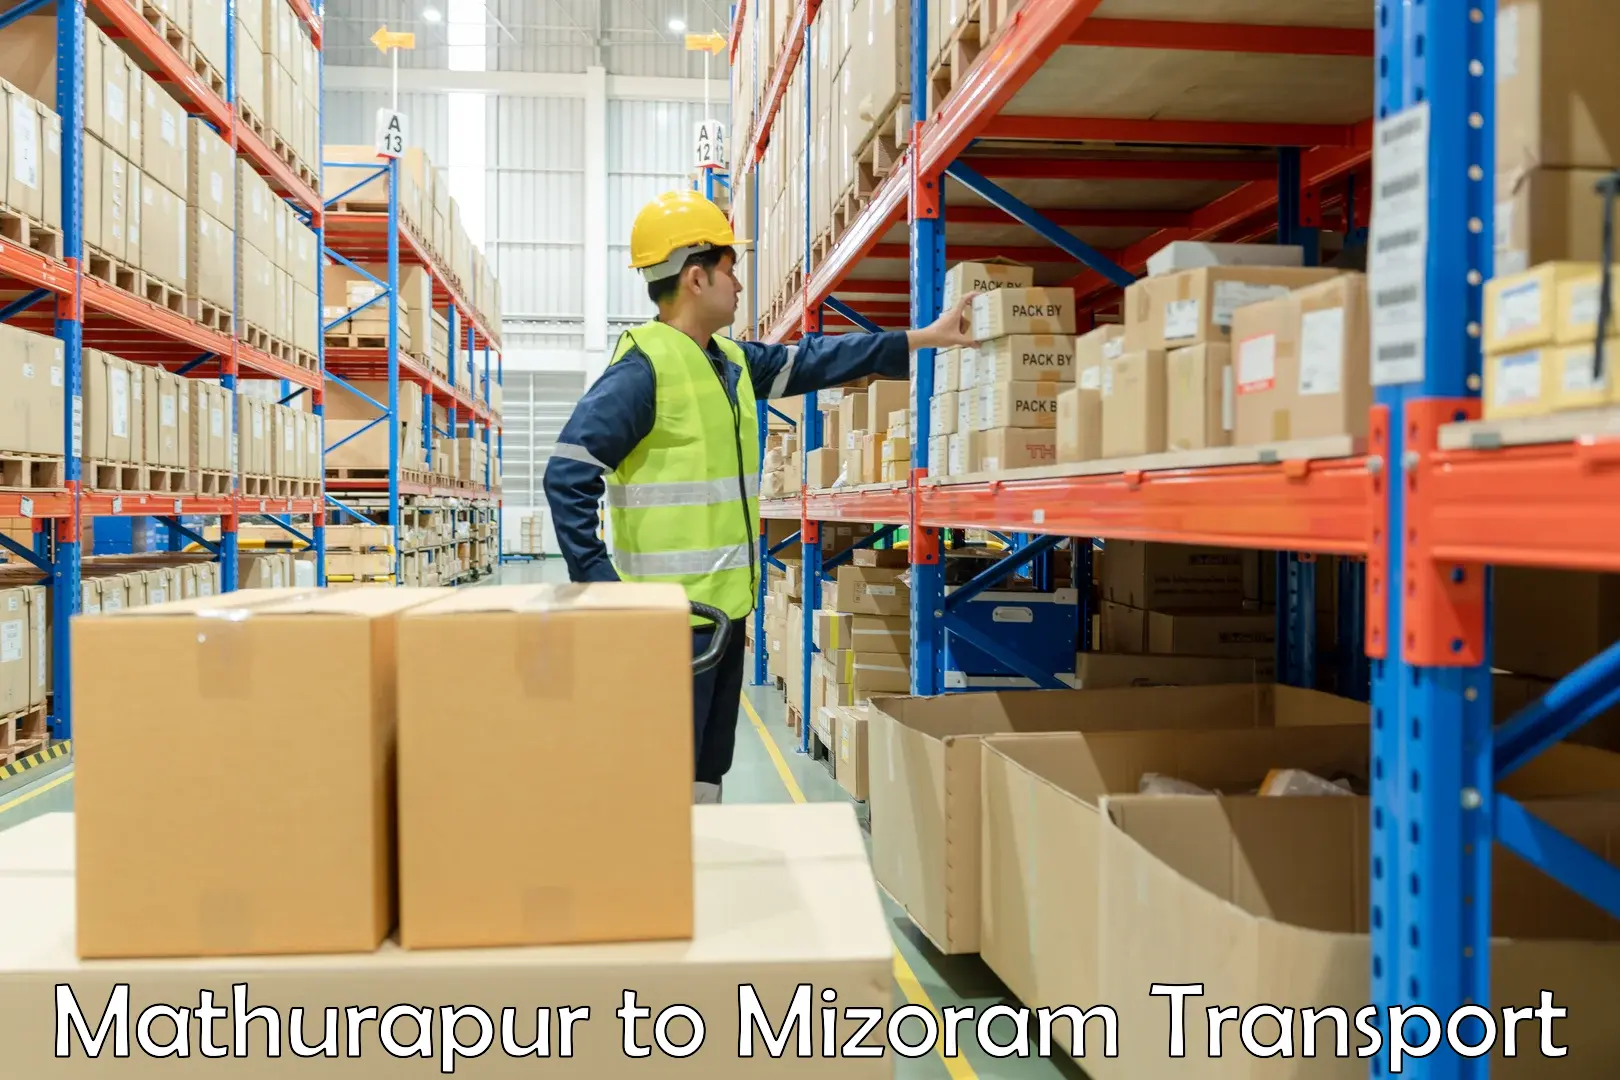 Transport in sharing Mathurapur to Mizoram